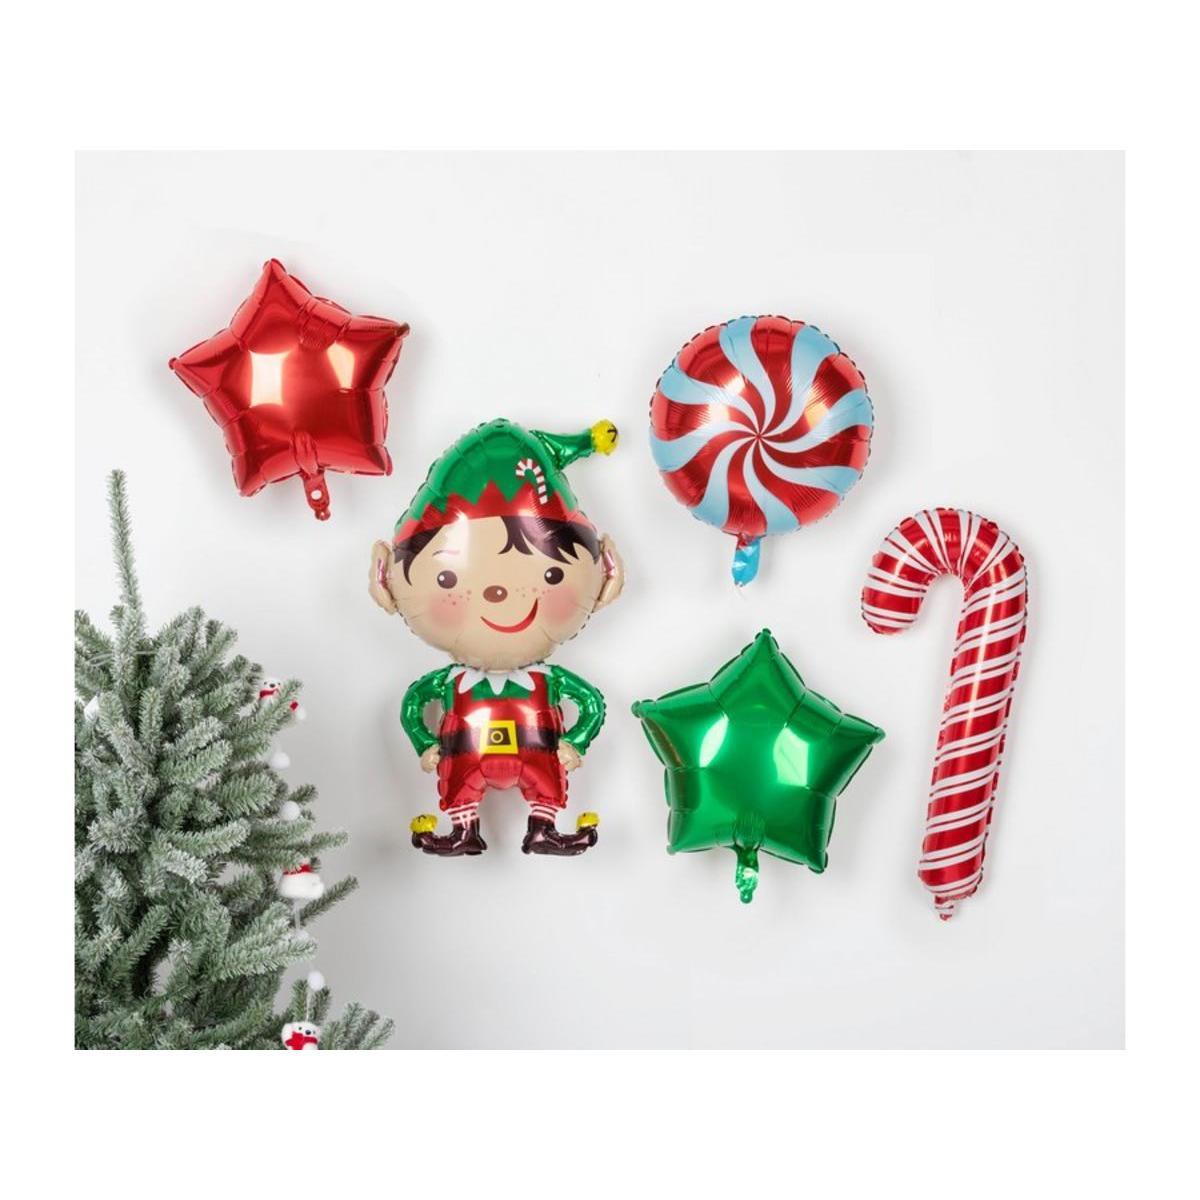 5 ballons décoratifs de Noël - H 99 cm - FAIRY STARS